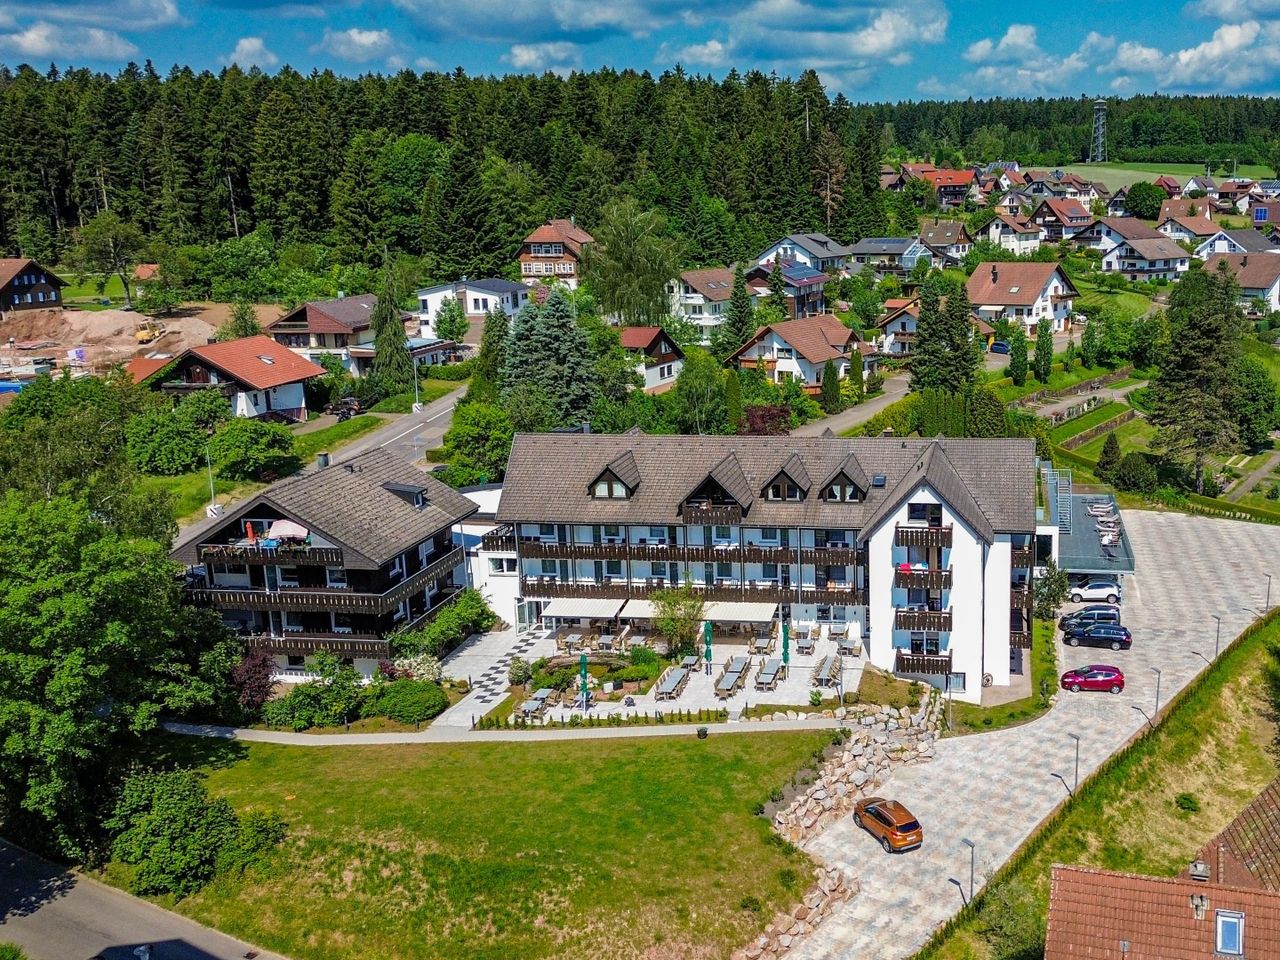 3 Tage Wellnessurlaub im Schwarzwald mit Halbpension